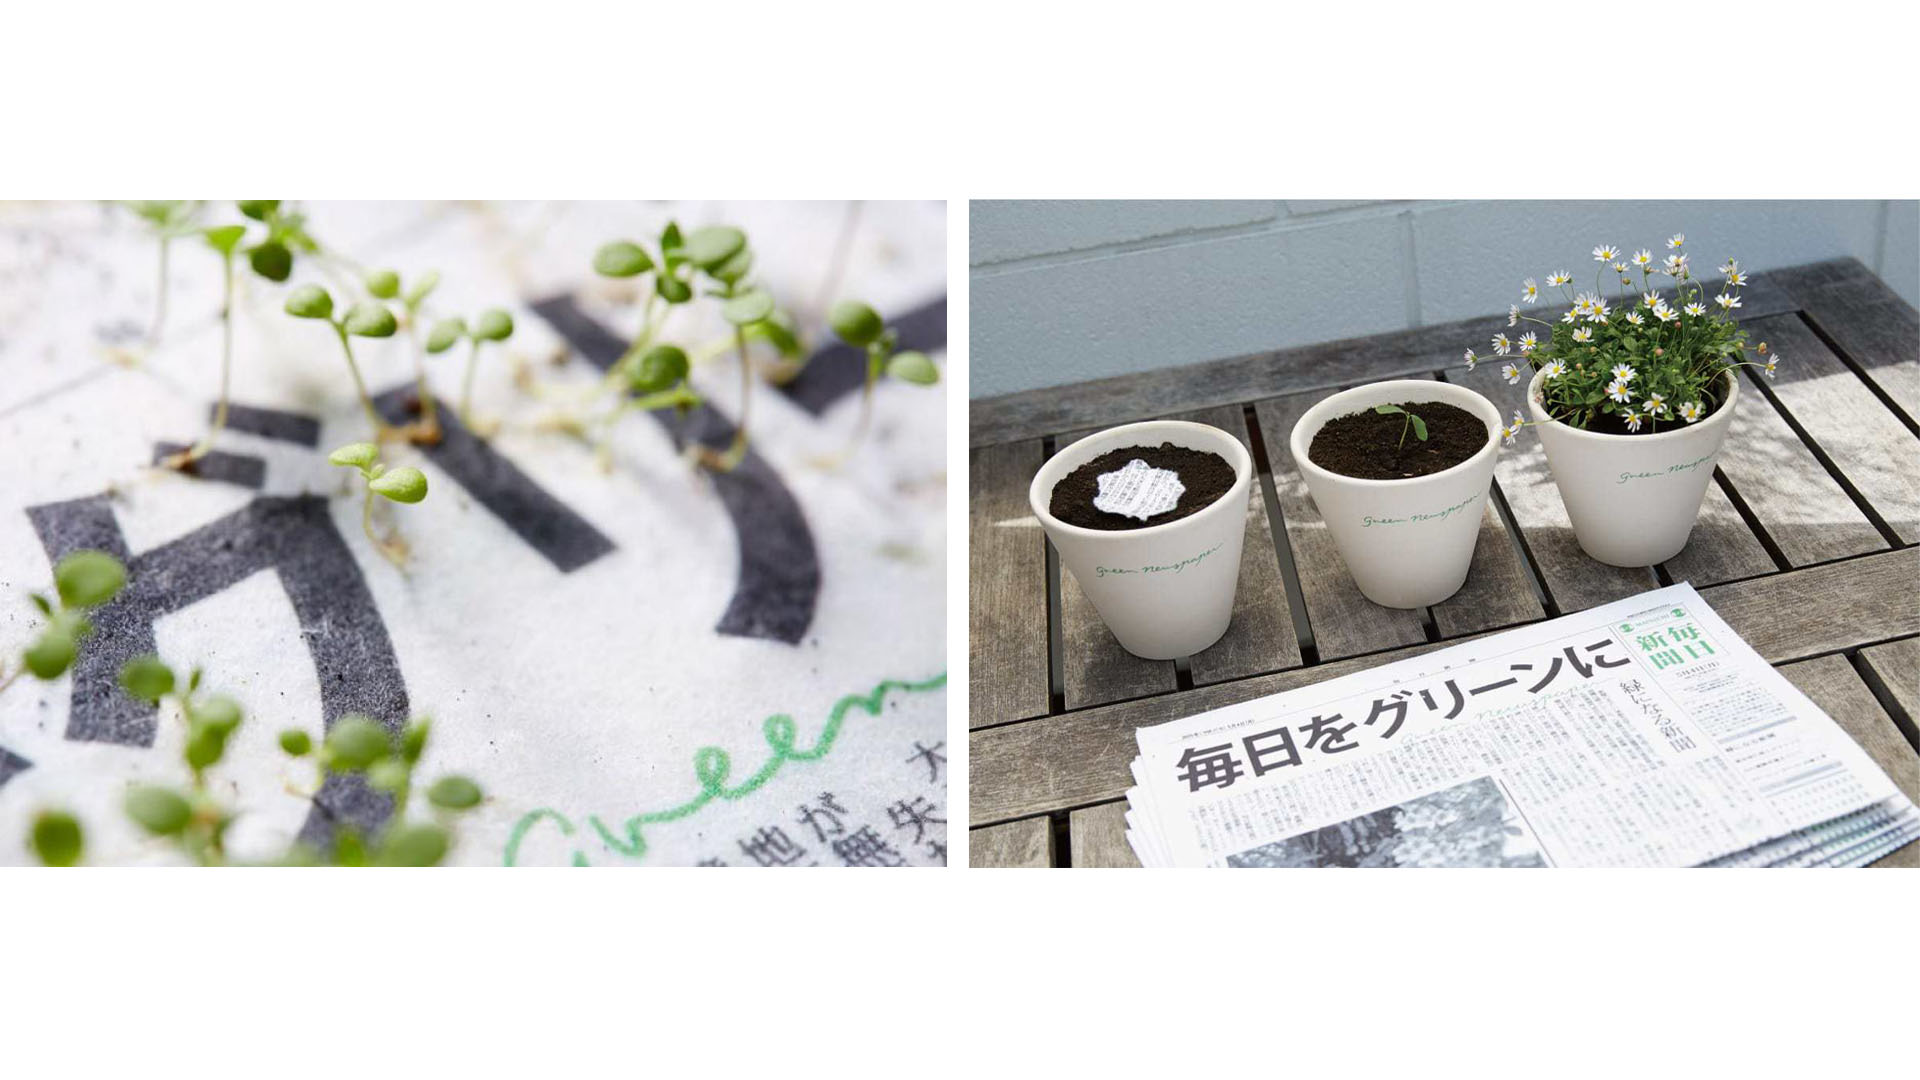 The Mainichi es un impreso totalmente ecológico al que se le compactan al papel múltiples semillas que germinan luego de que deja de ser noticioso